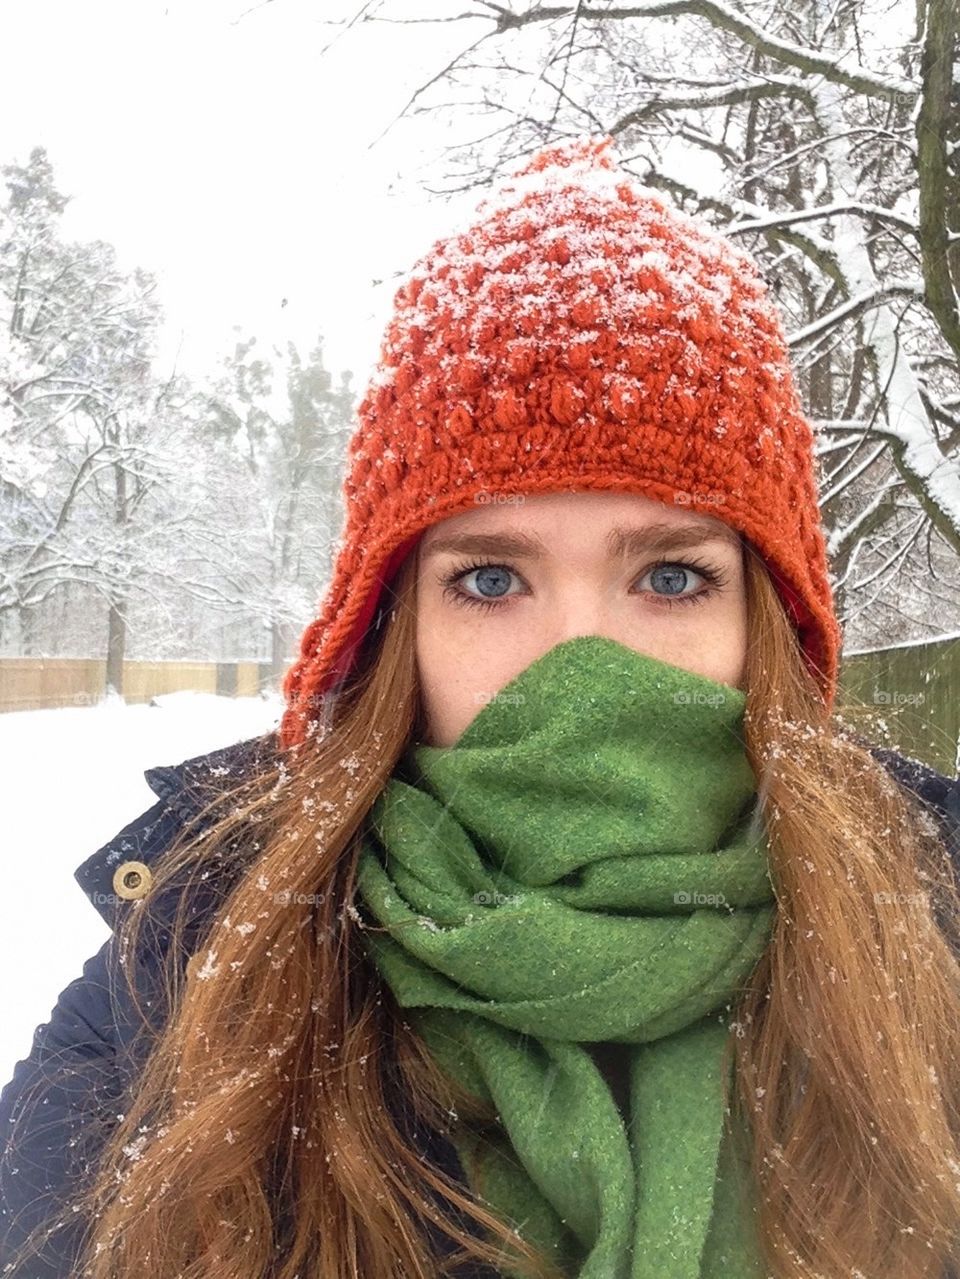 Selfie in the snow 